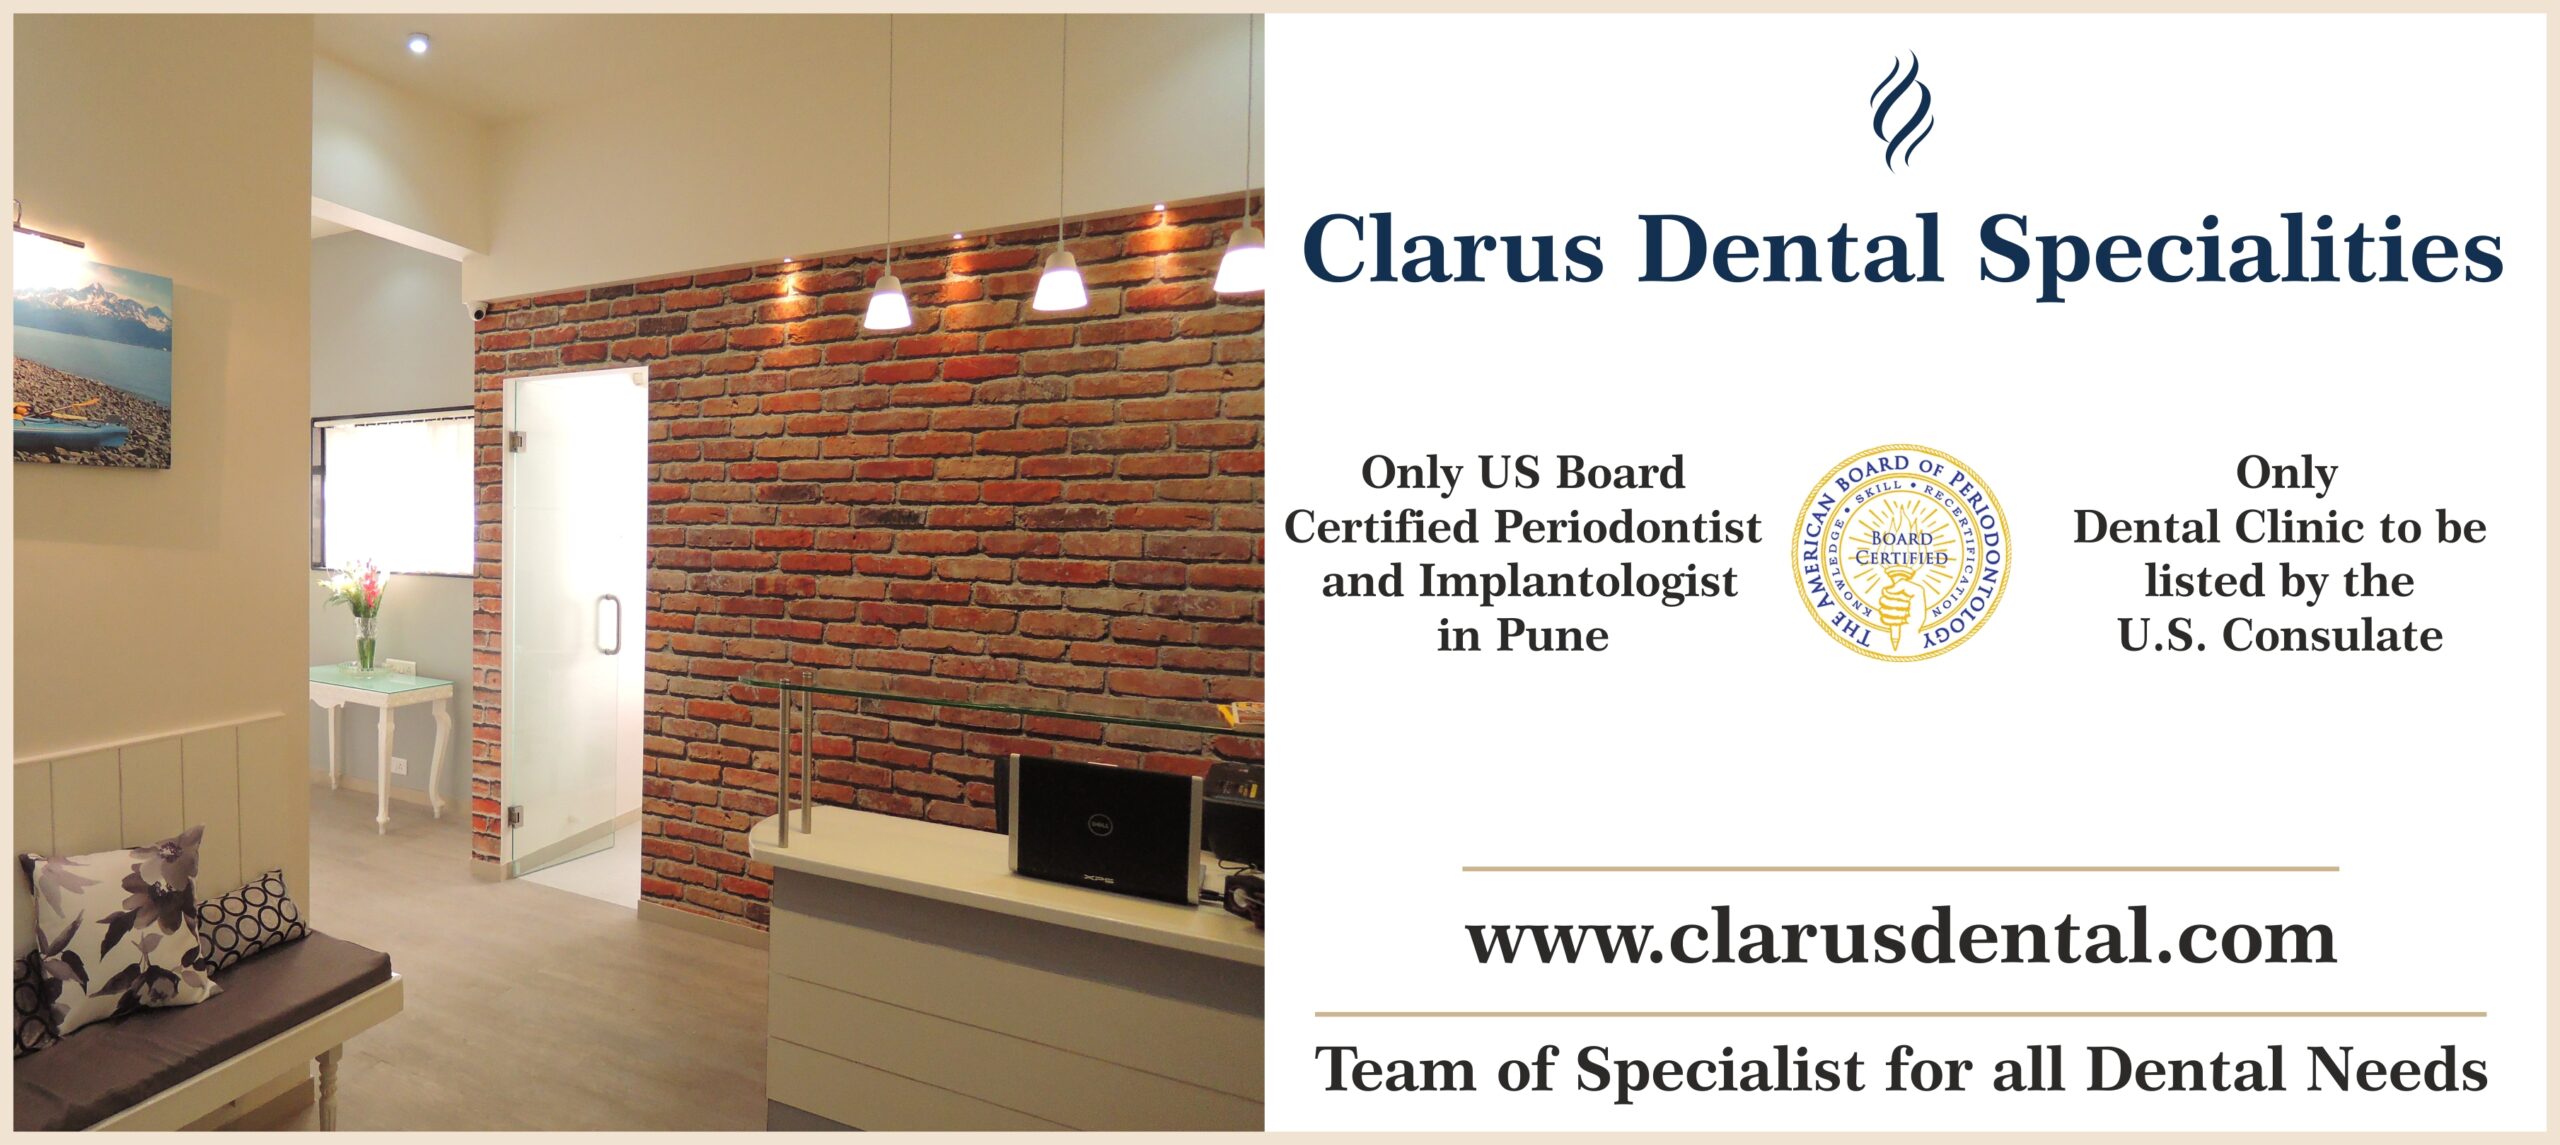 Clarus Dental - 450x 200 Banner